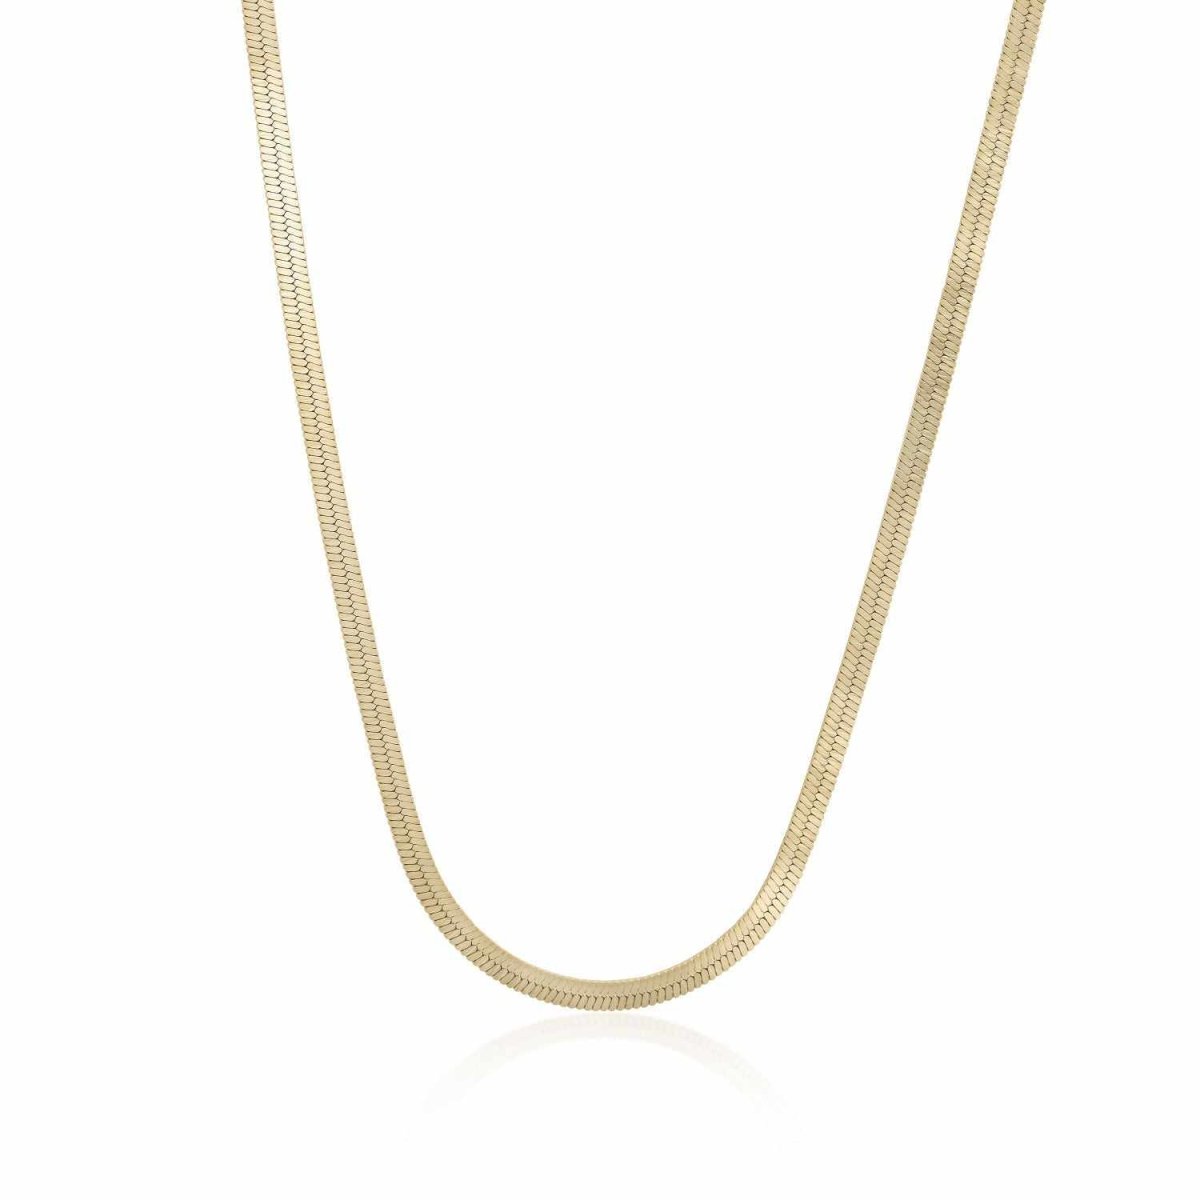 Collar · Collares cortos de plata bañada en oro diseño snake